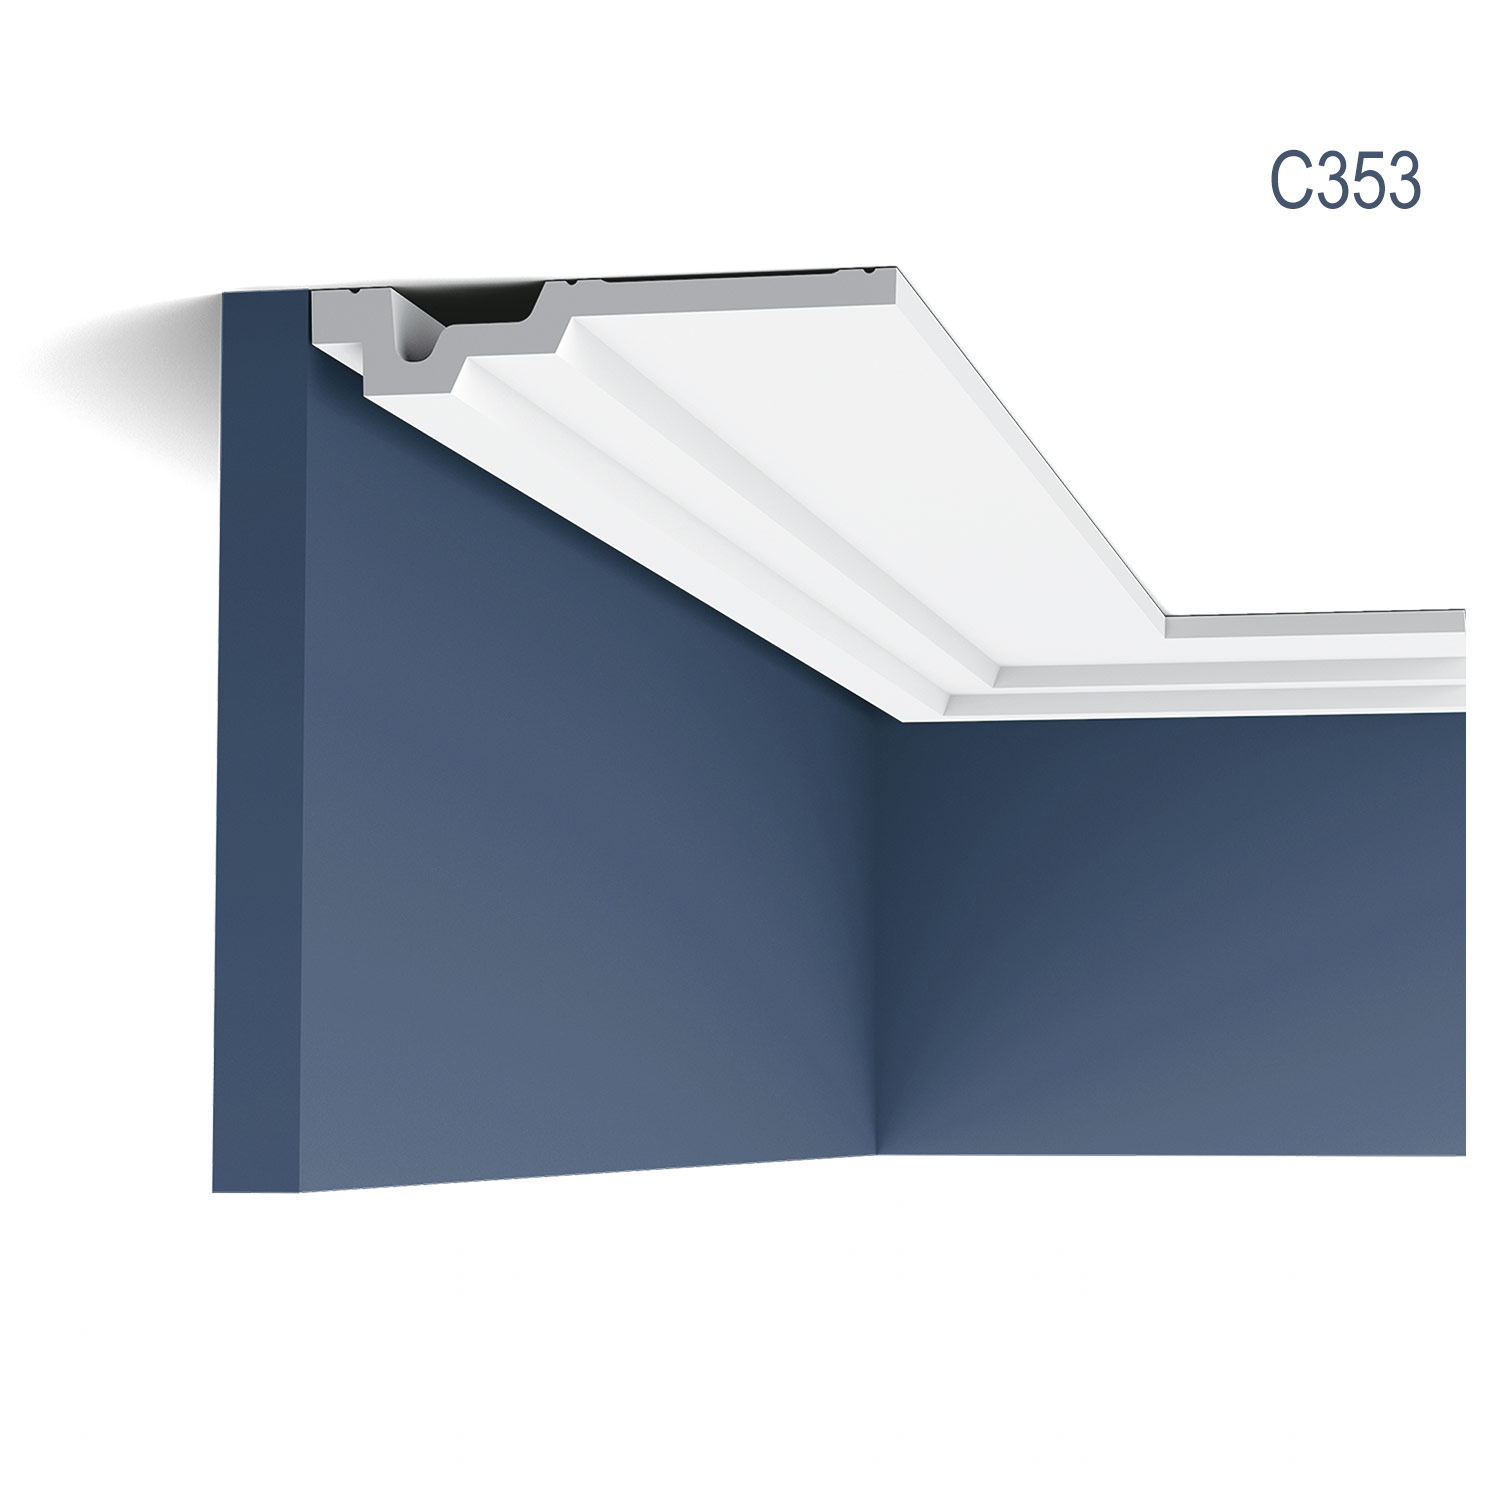 Cornisa C353, profil decorativ, pentru tavan, alba, vopsibila, rigida, calitate excelenta, Belgia, din Poliuretan rigid, L 200 x H 3 x W 16.5 cm